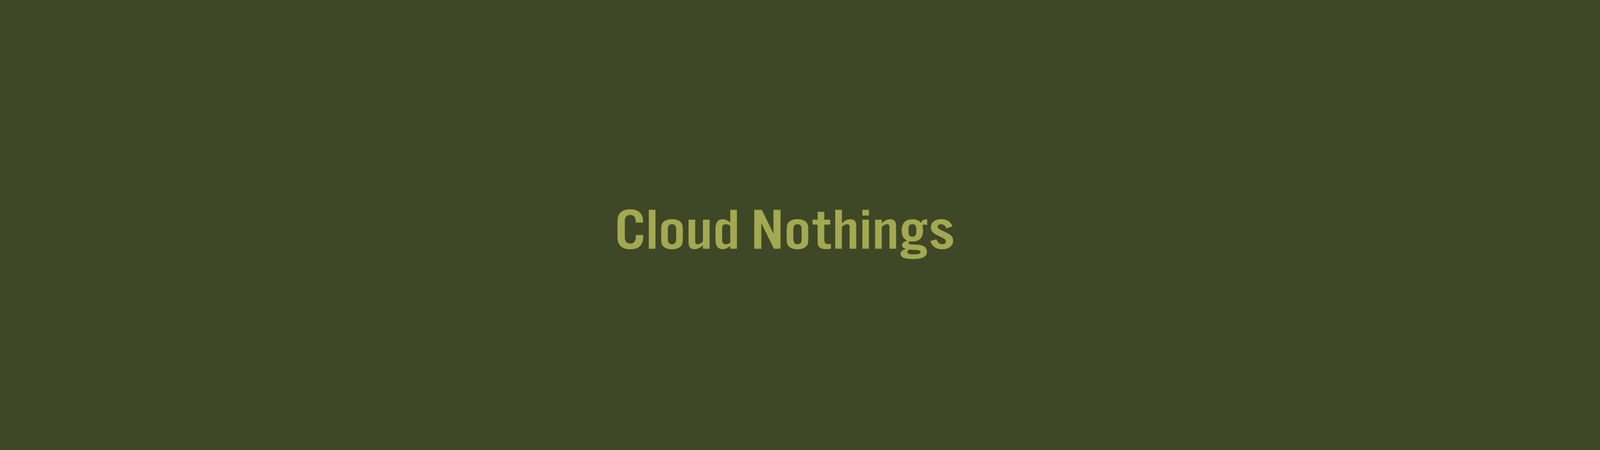 Cloud Nothings